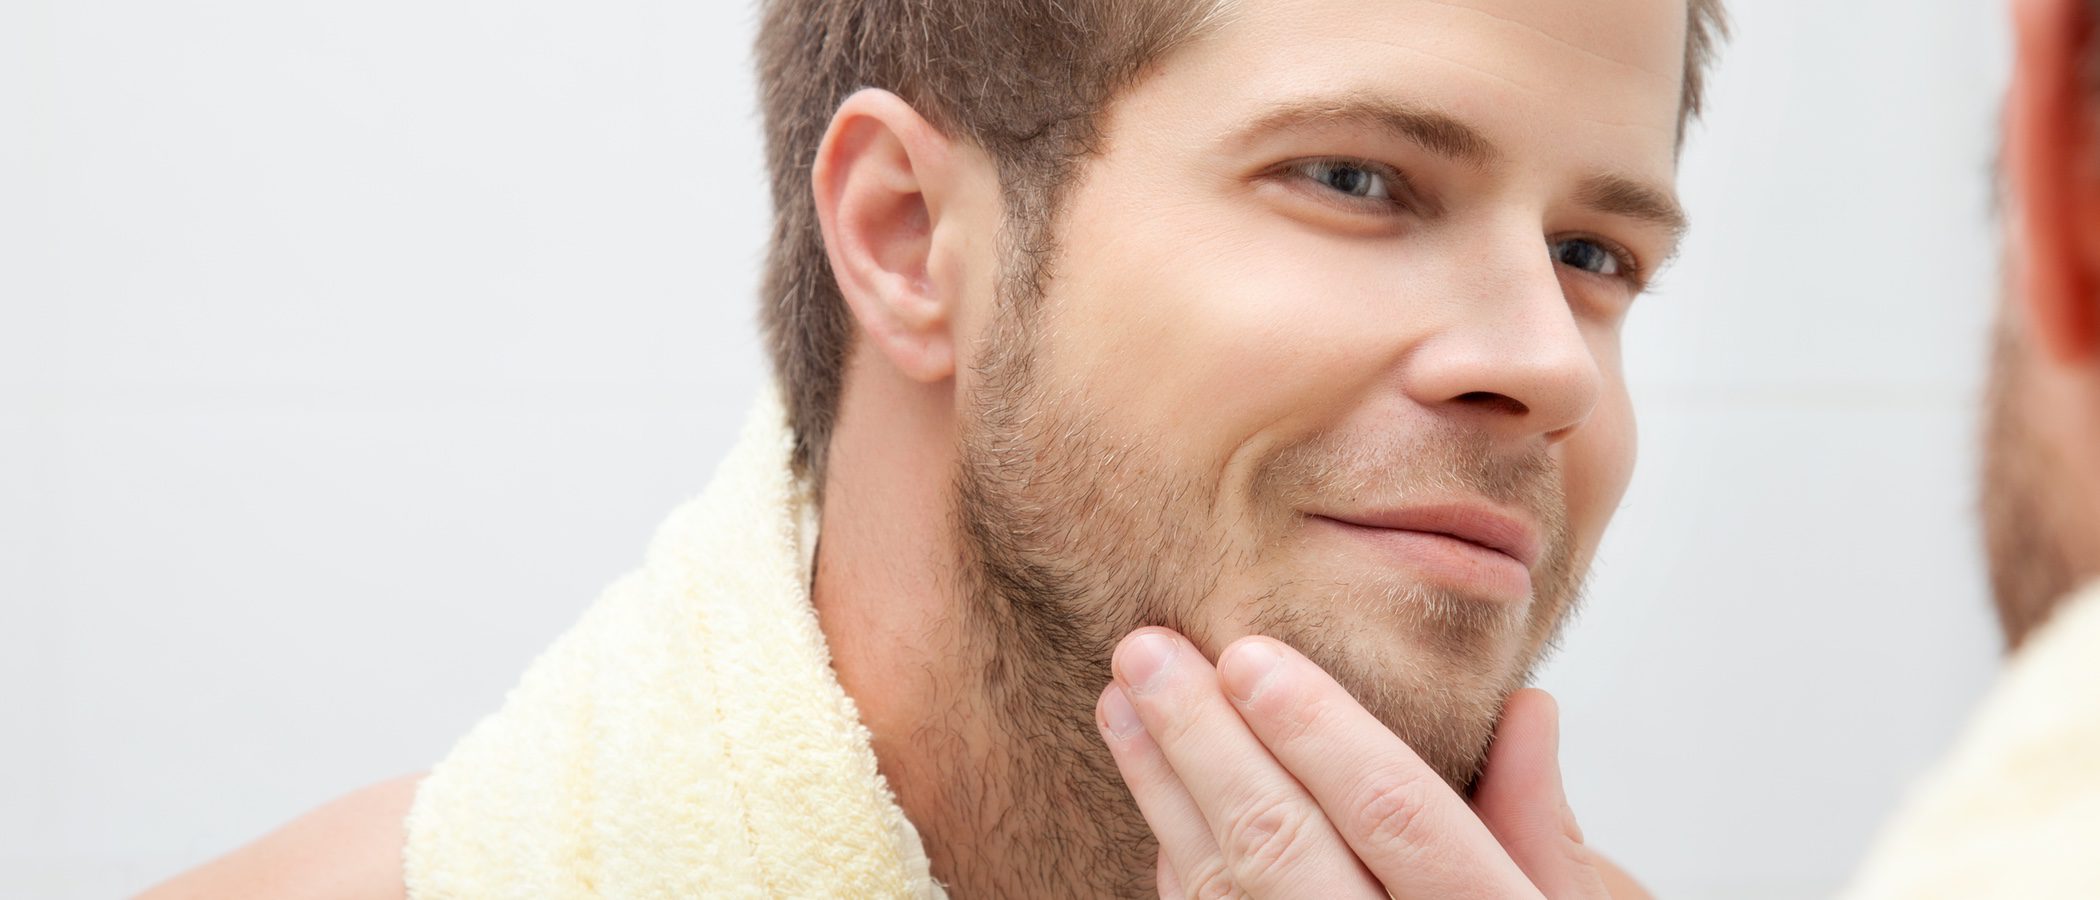 Aceite para barba: qué es y cómo se aplica